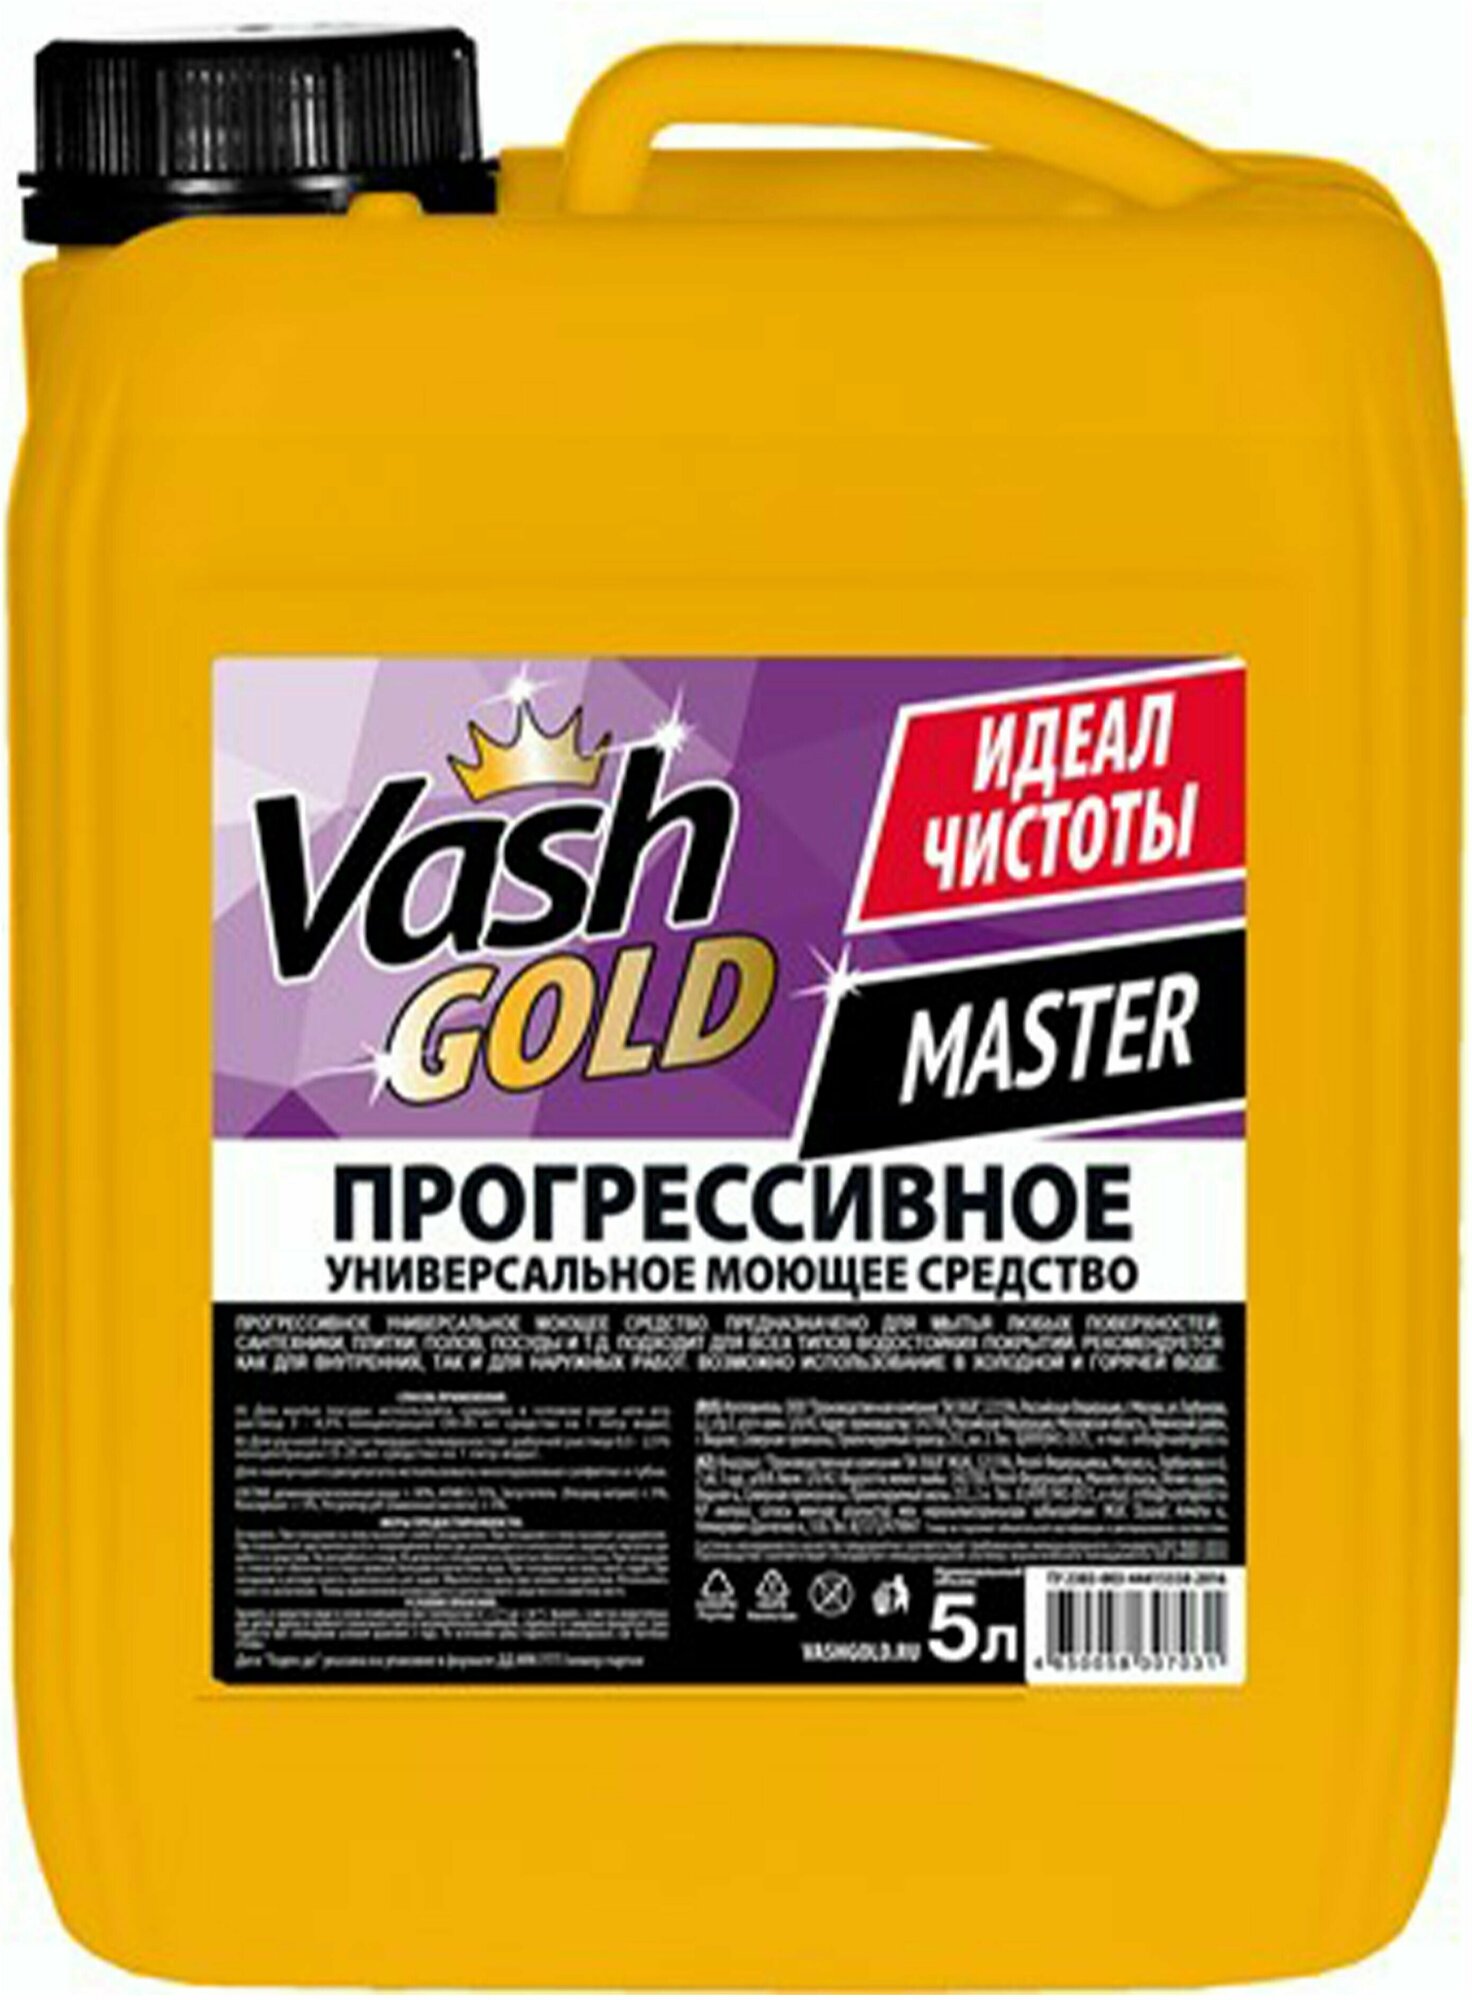 Средство моющее Vash Gold Master Прогрессивное универсальное, 1 упаковка